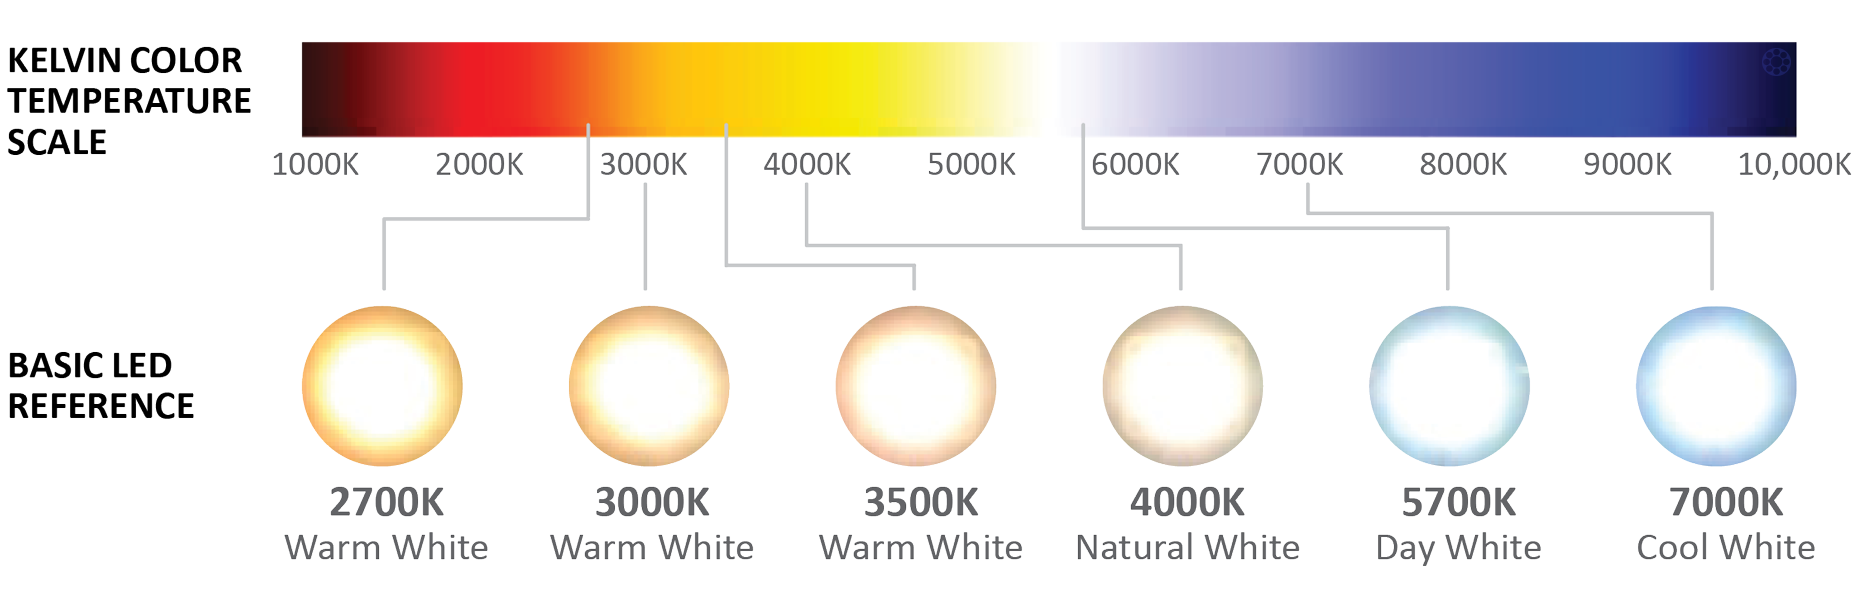 Led bi colors. Светодиодные лампы градация цветности. Температура светодиодных ламп таблица. Температура света в Кельвинах таблица. Таблица свечения светодиодных ламп.